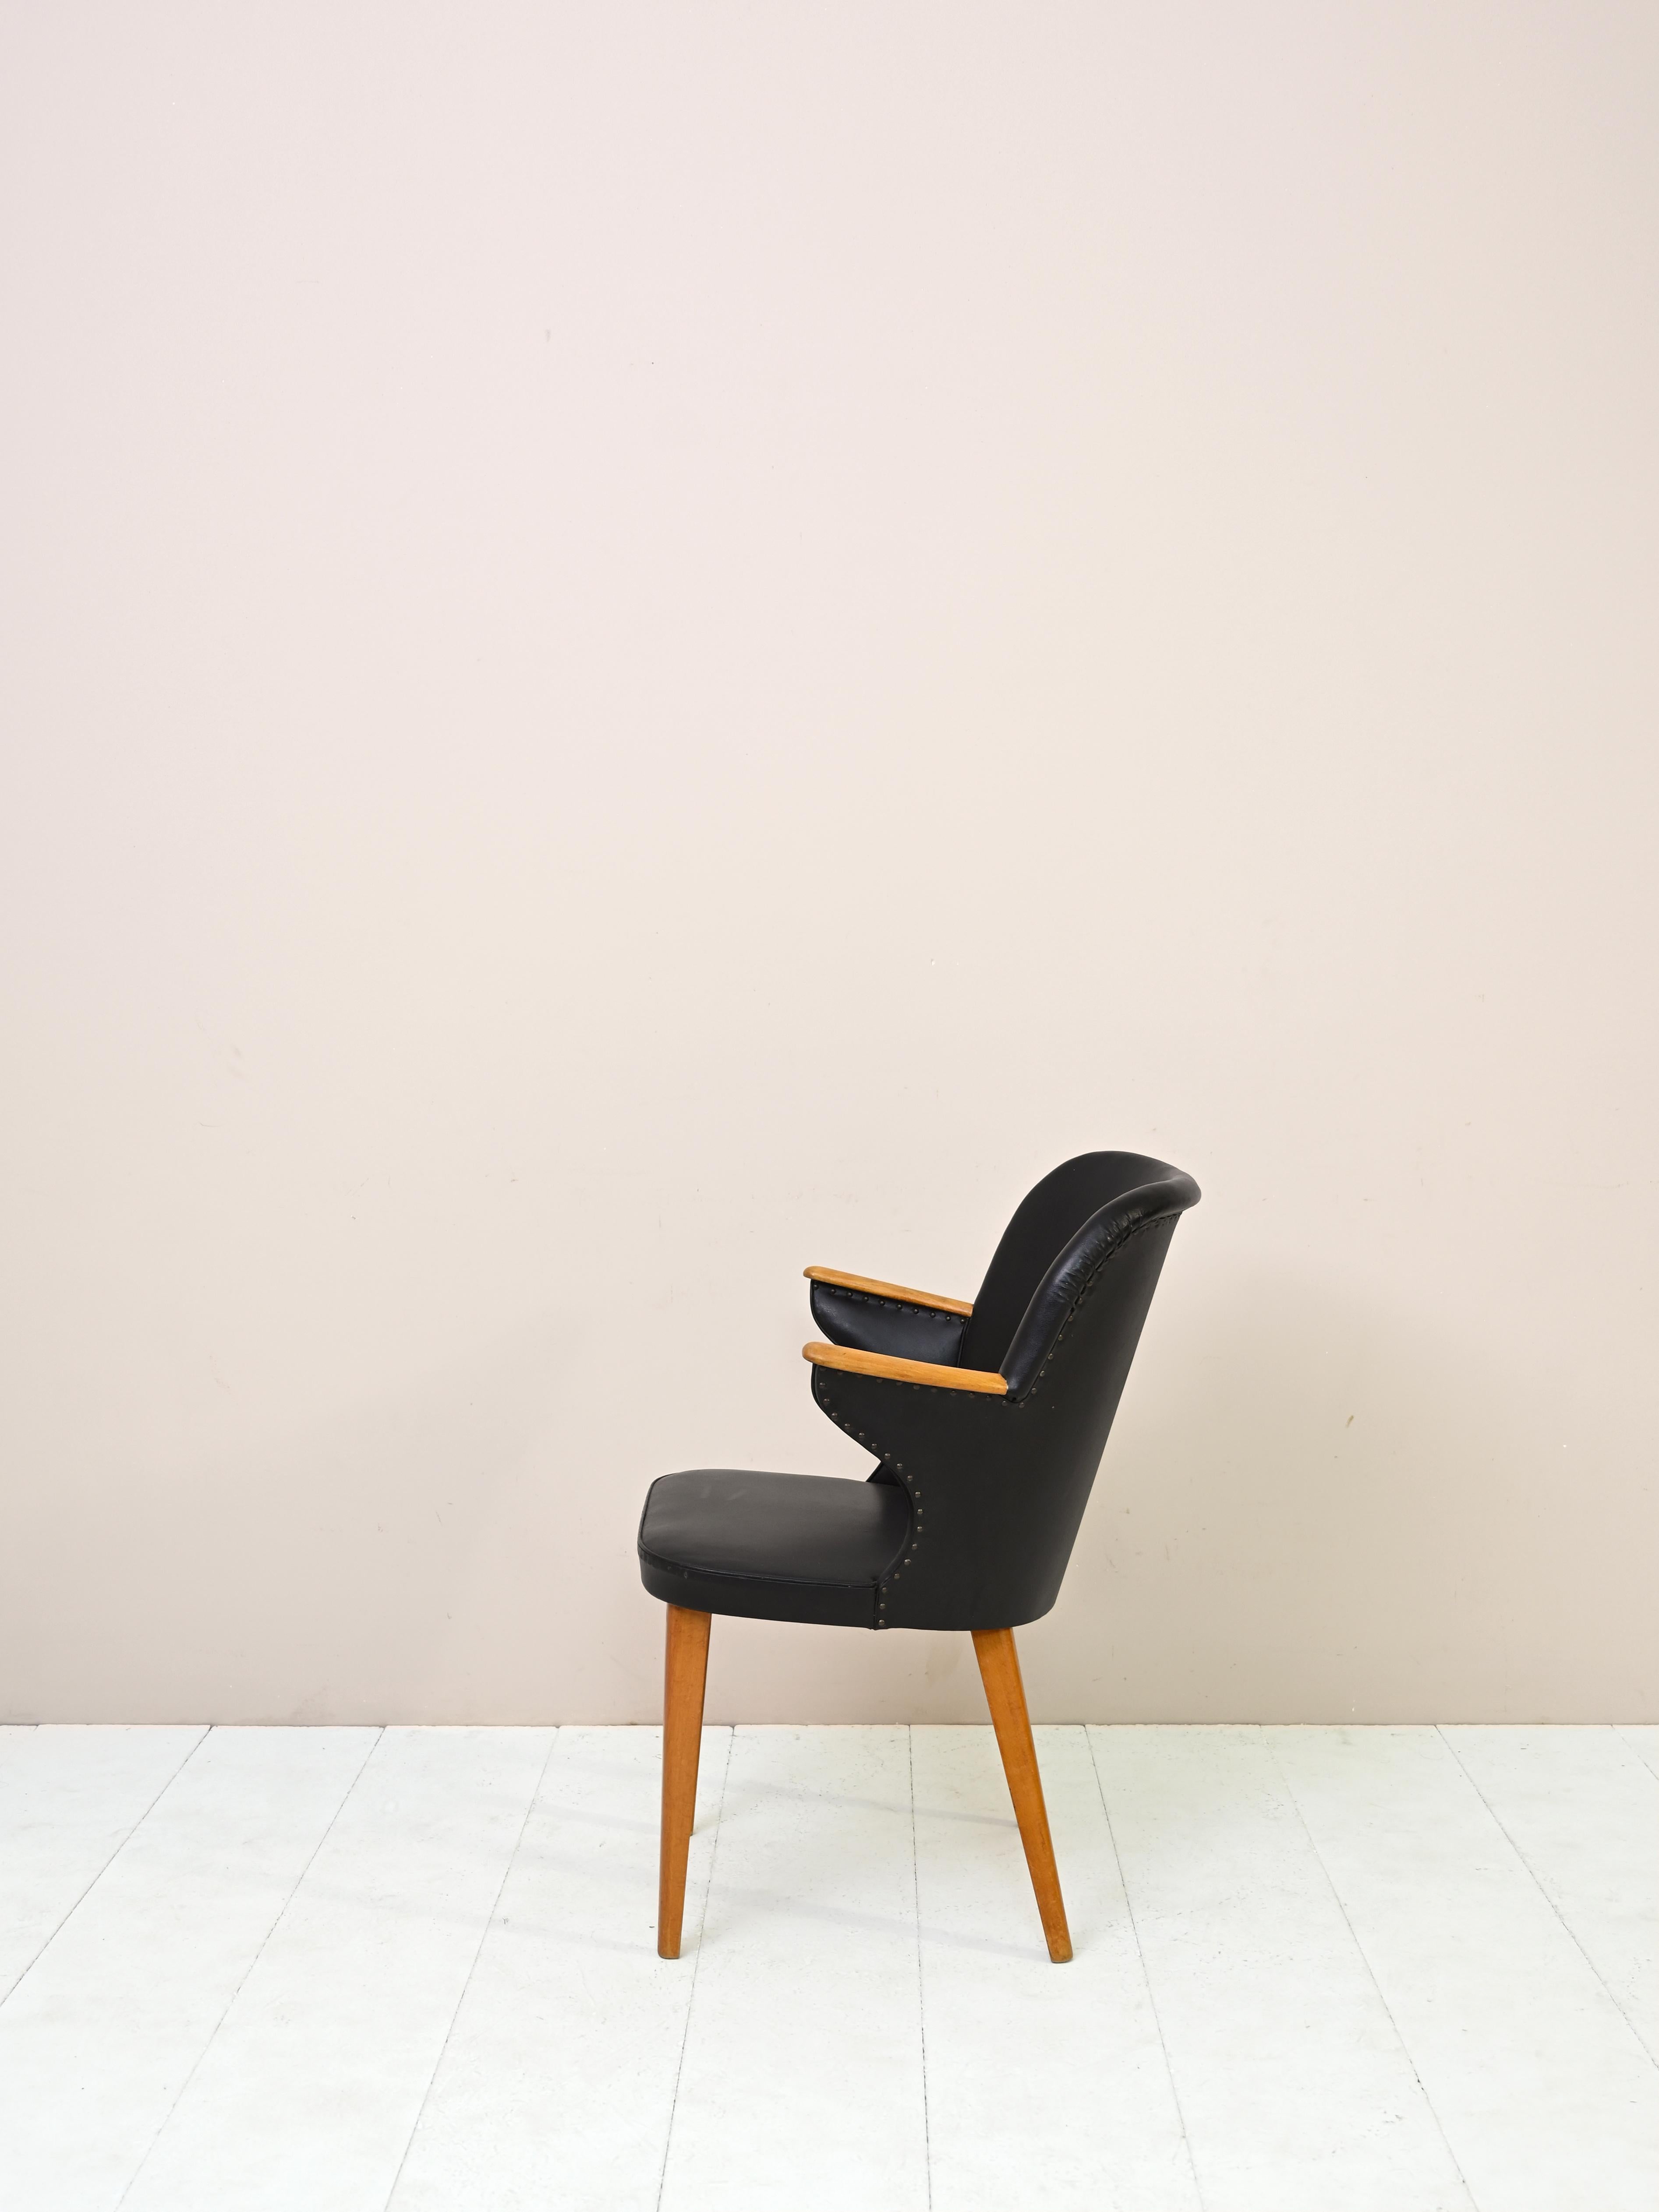 Vintage 1960er Jahre schwarzes Leder Effekt Stuhl.
Ein moderner Stuhl mit einem starken Charakter.
Das Gestell ist aus Birkenholz, die Sitzfläche aus schwarzem Kunstleder.
Probieren Sie ihn als bequemen Schreibtischstuhl aus.

Guter Zustand. Es